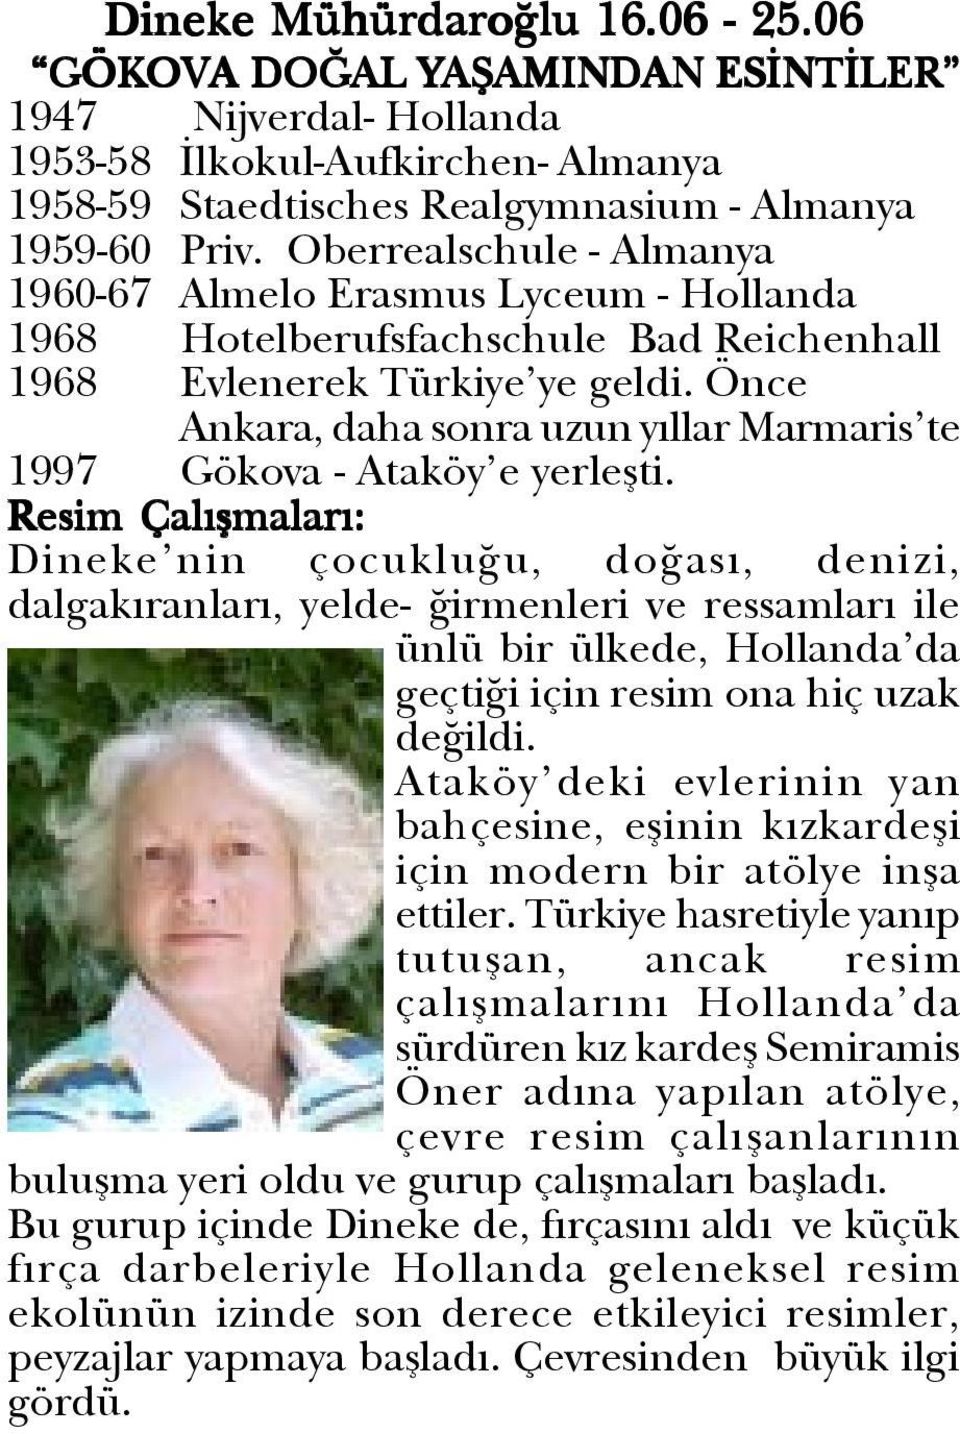 Önce Ankara, daha sonra uzun yýllar Marmaris te 1997 Gökova - Ataköy e yerleþti.